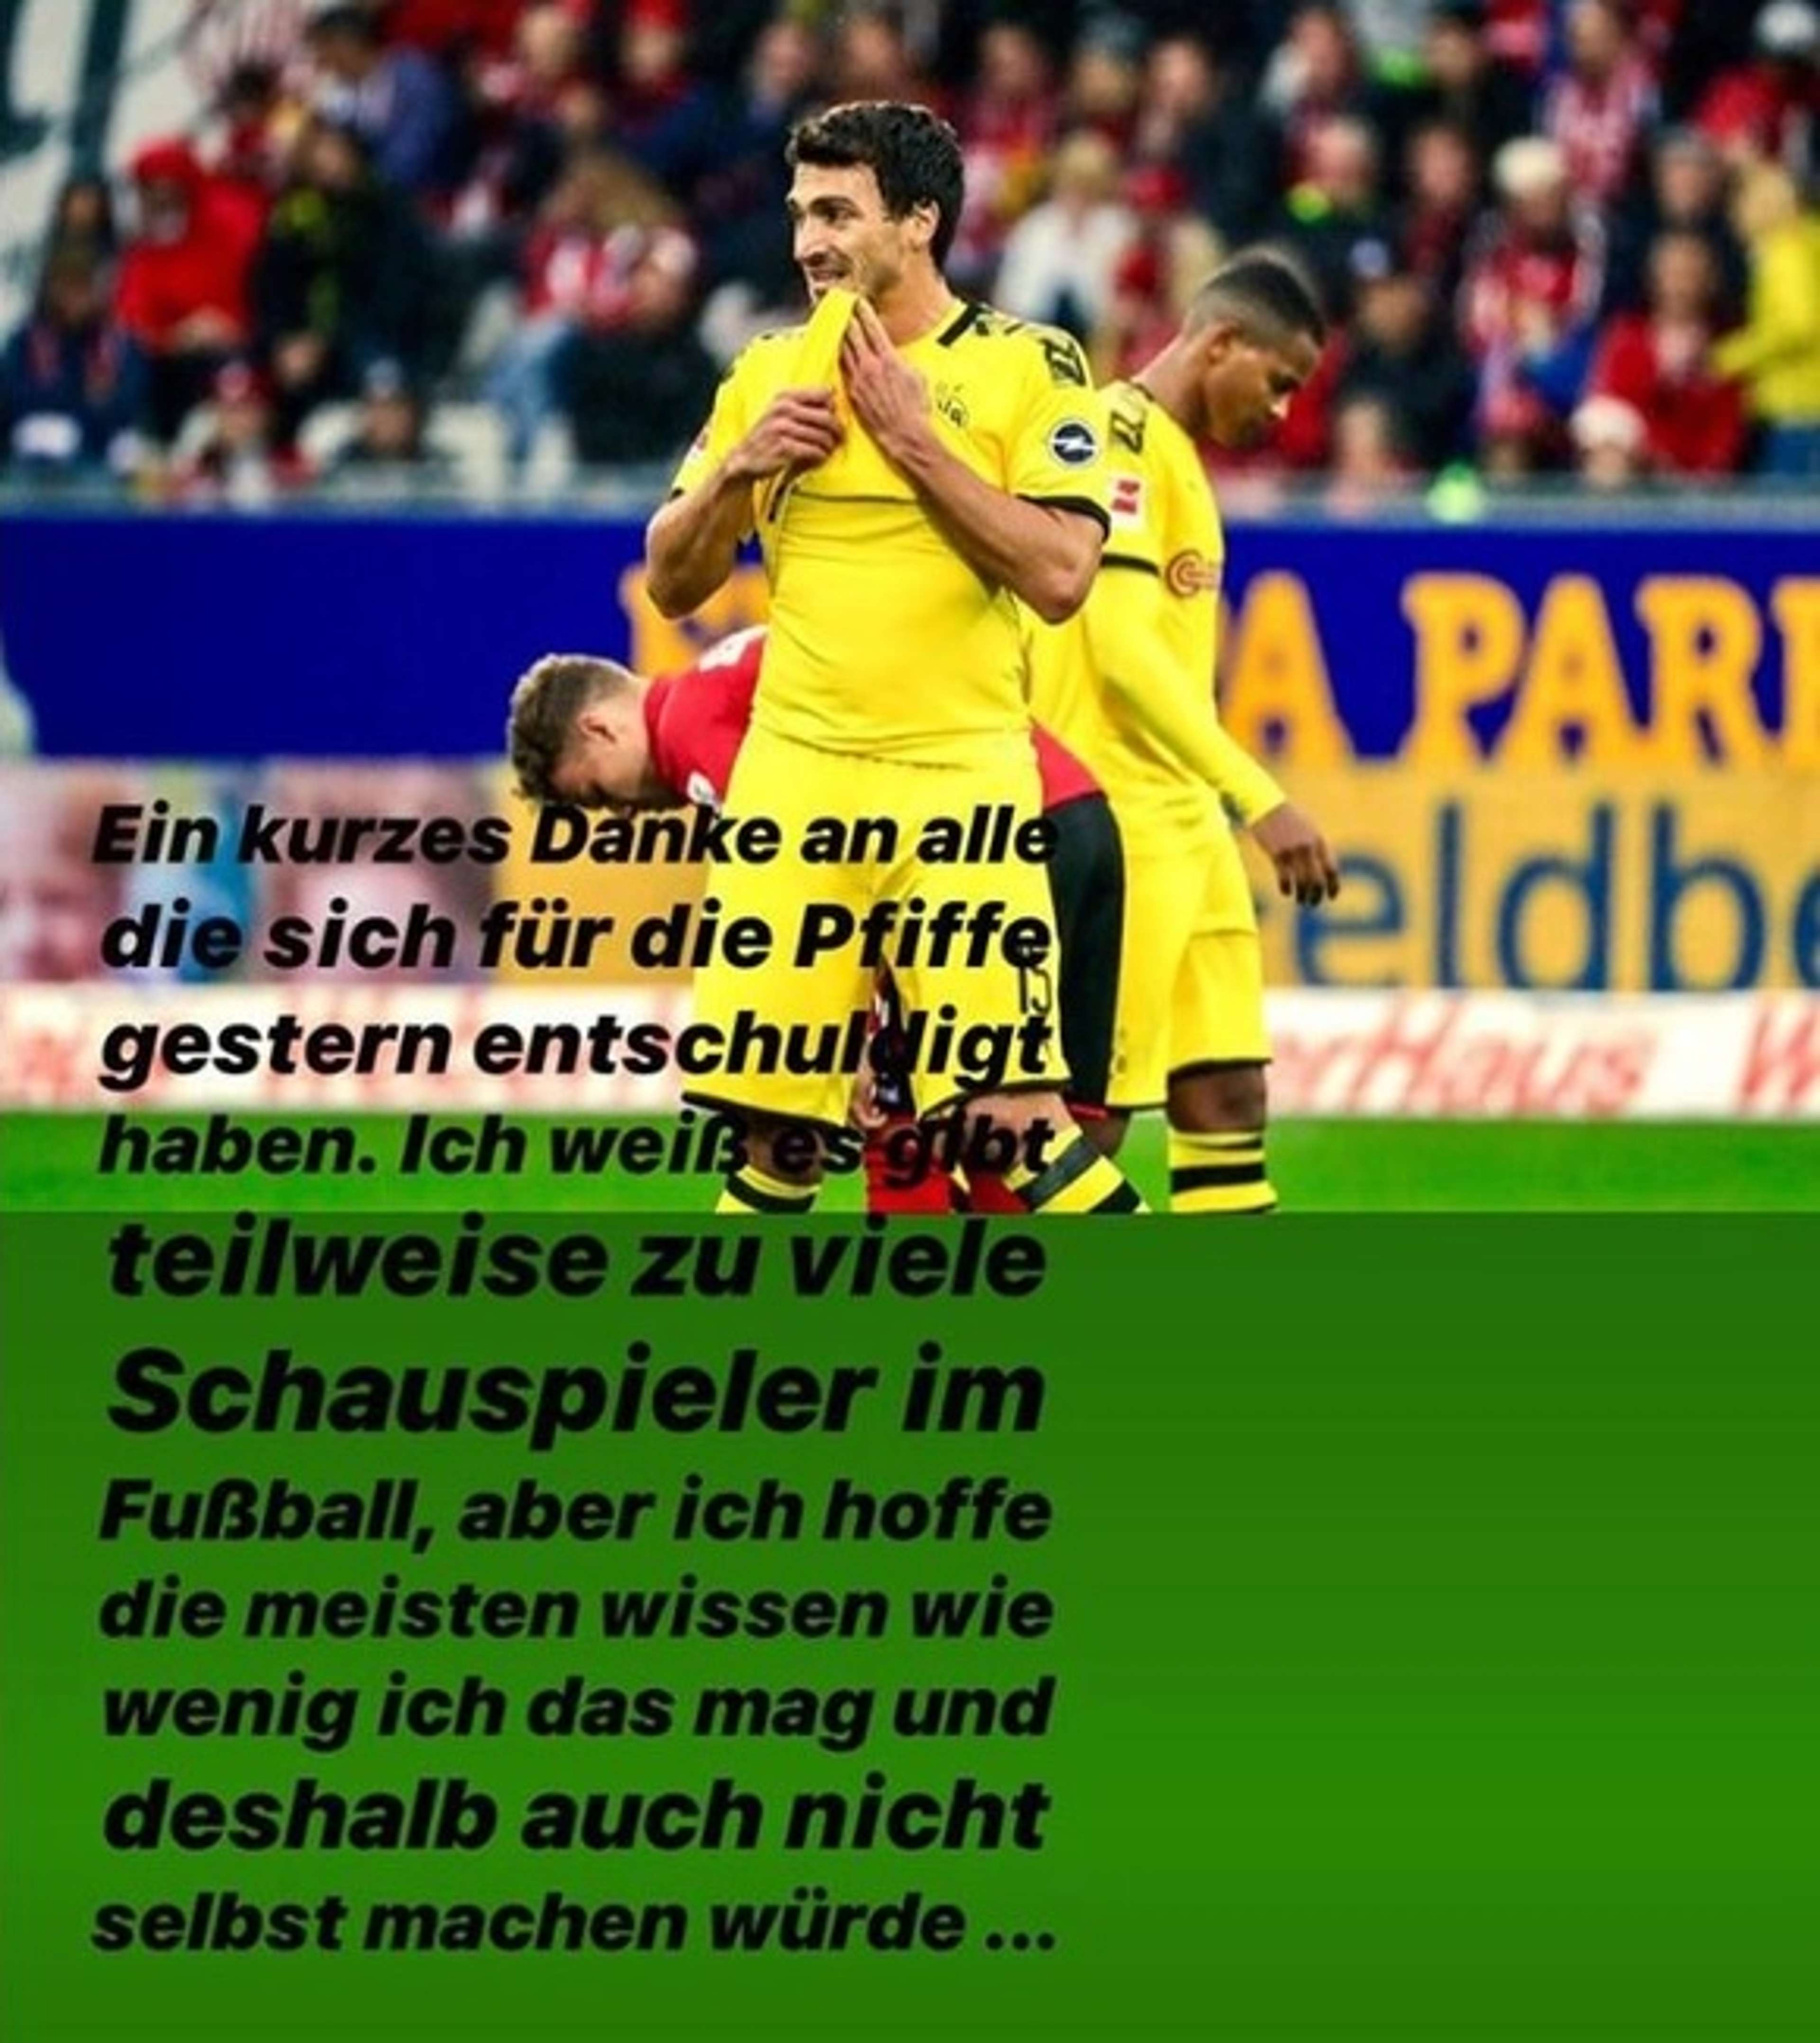 Hummels Instagram Freiburg Fans 06-10-2019